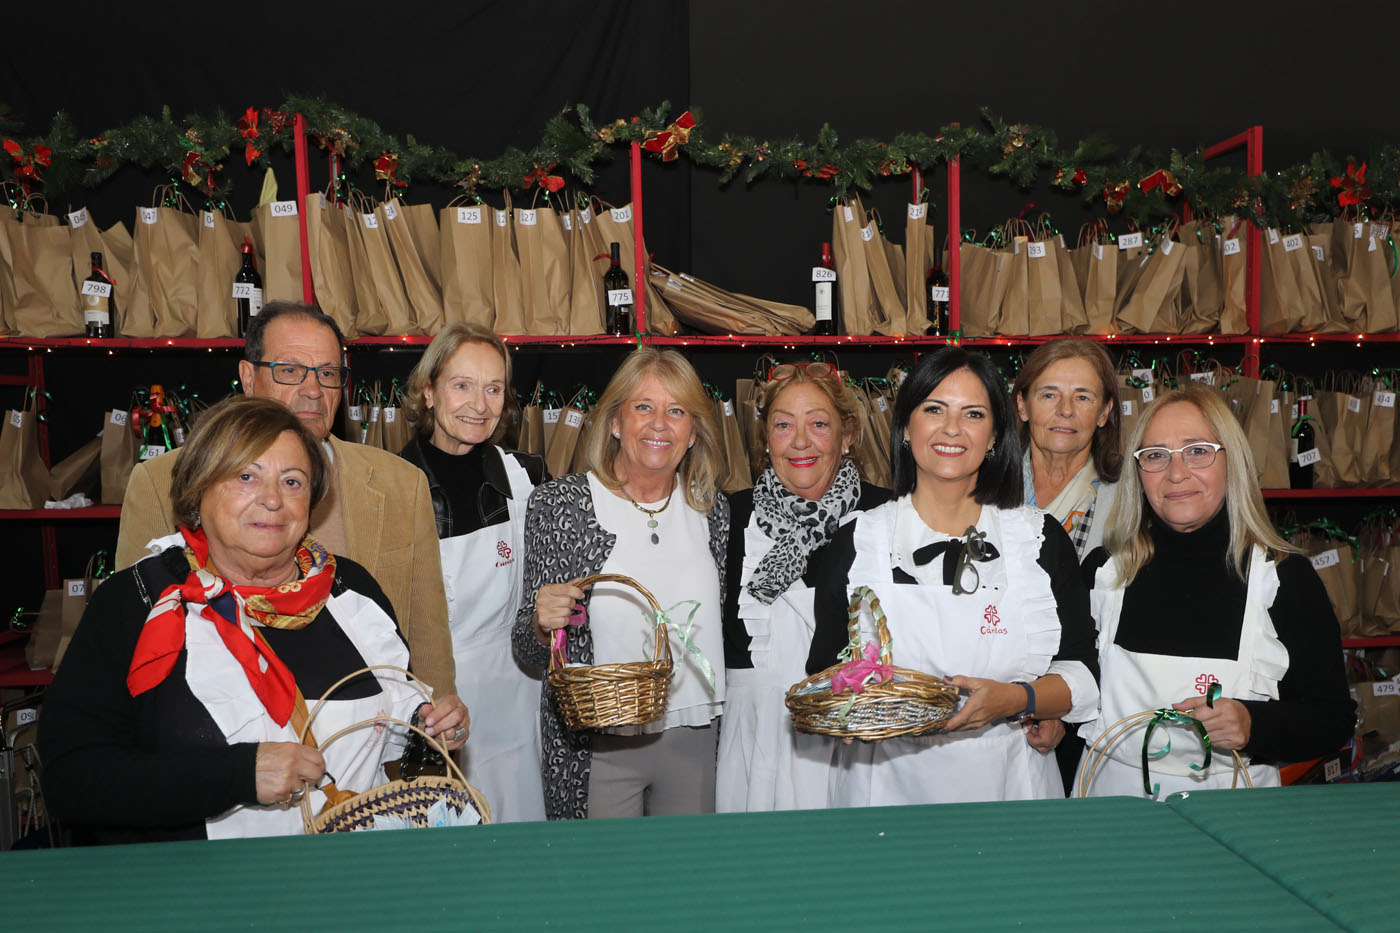 La alcaldesa respalda la labor de Cáritas en la inauguración de su Bazar Solidario de Navidad, que reúne hasta el domingo en el Palacio de Congresos más de 120 puestos